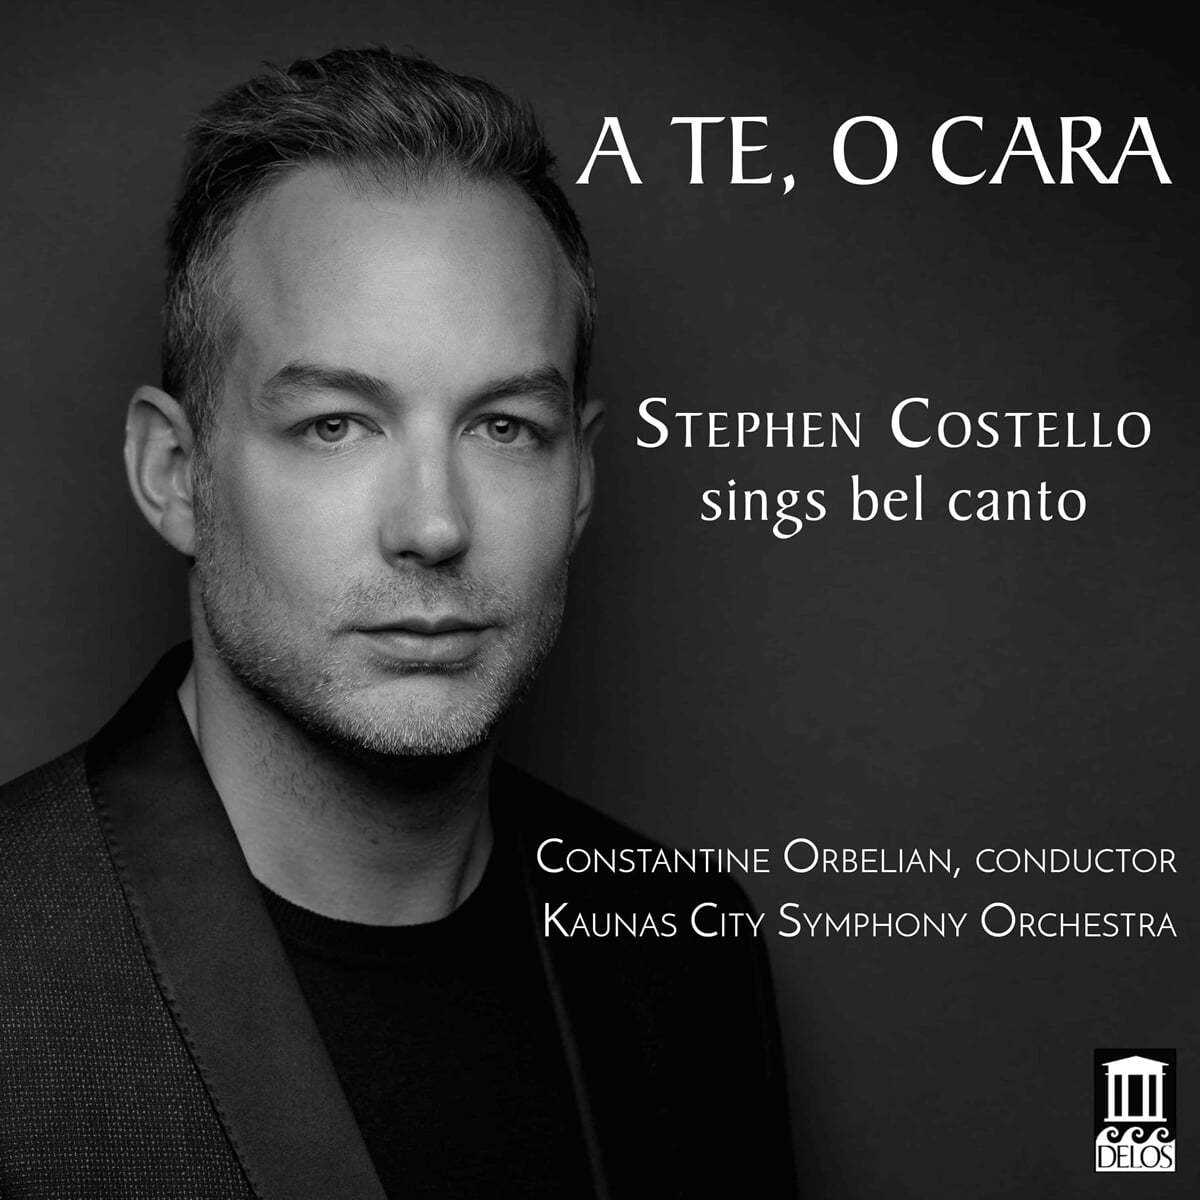 Stephen Costello 벨 칸토 아리아 - 도니제티 / 벨리디 / 베르디 (Sings Bel Canto - A Te, O Cara) 